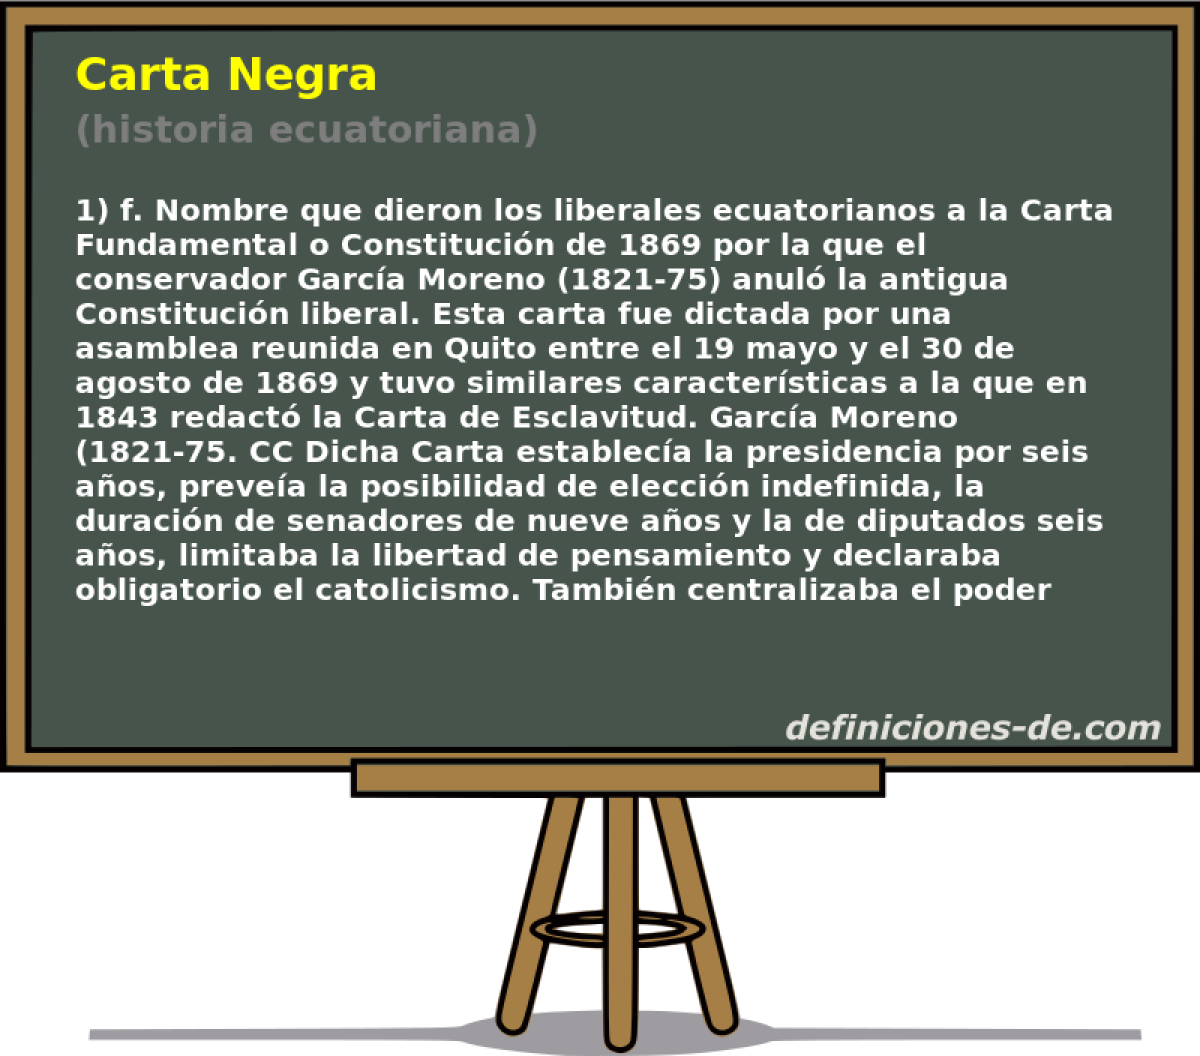 Carta Negra (historia ecuatoriana)